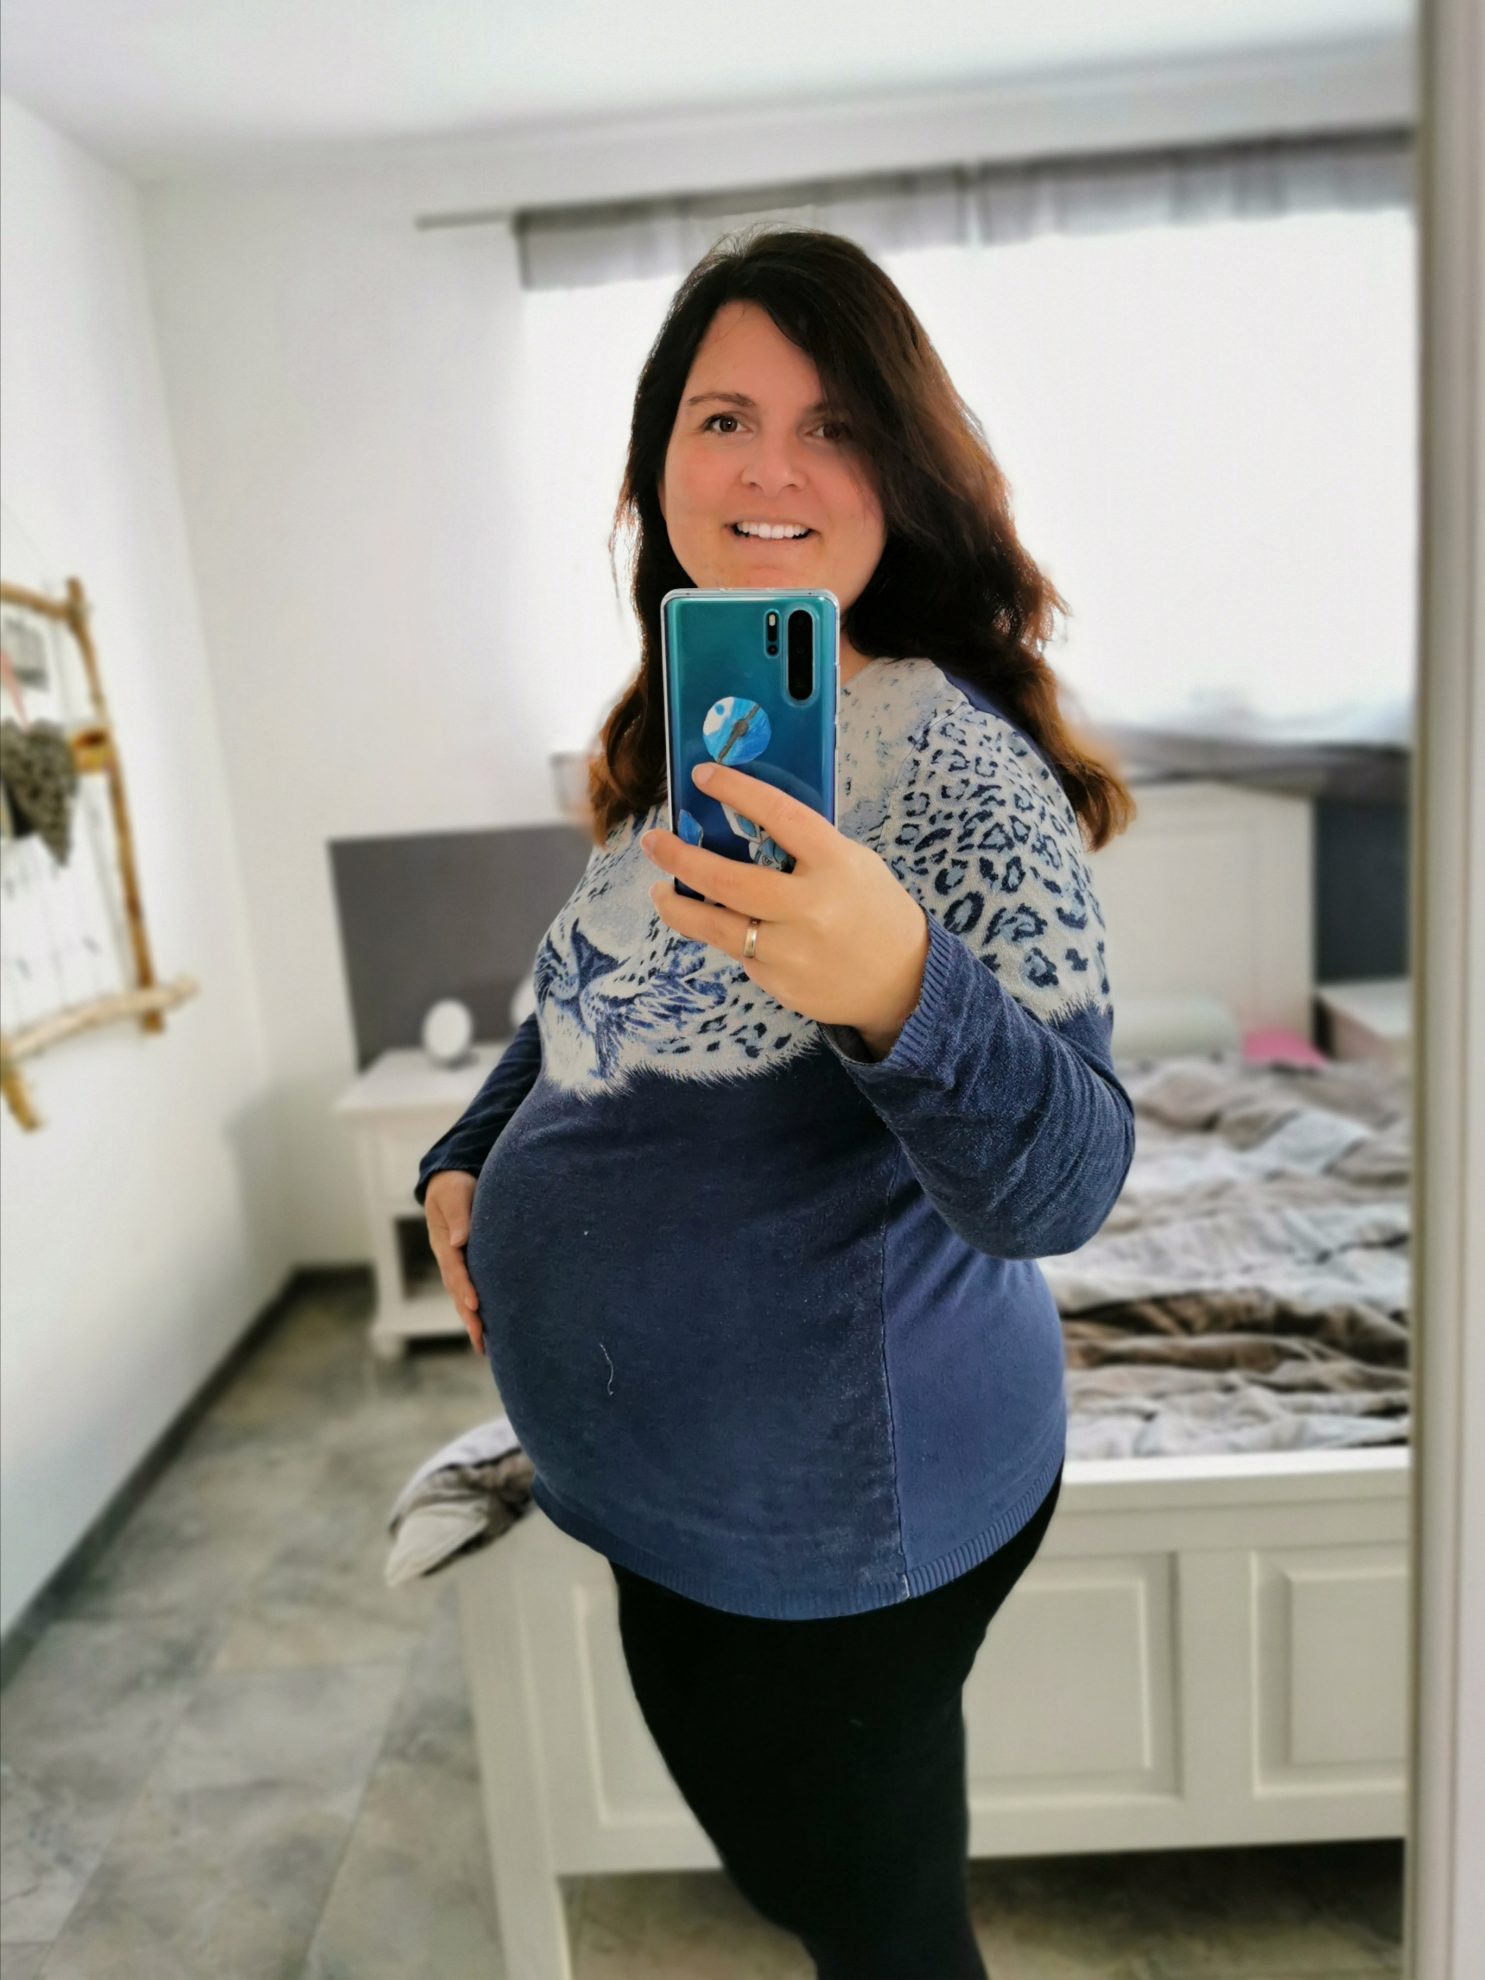 18 Wochen schwanger mit dem 6. Kind. Babybauch bei Übergewicht